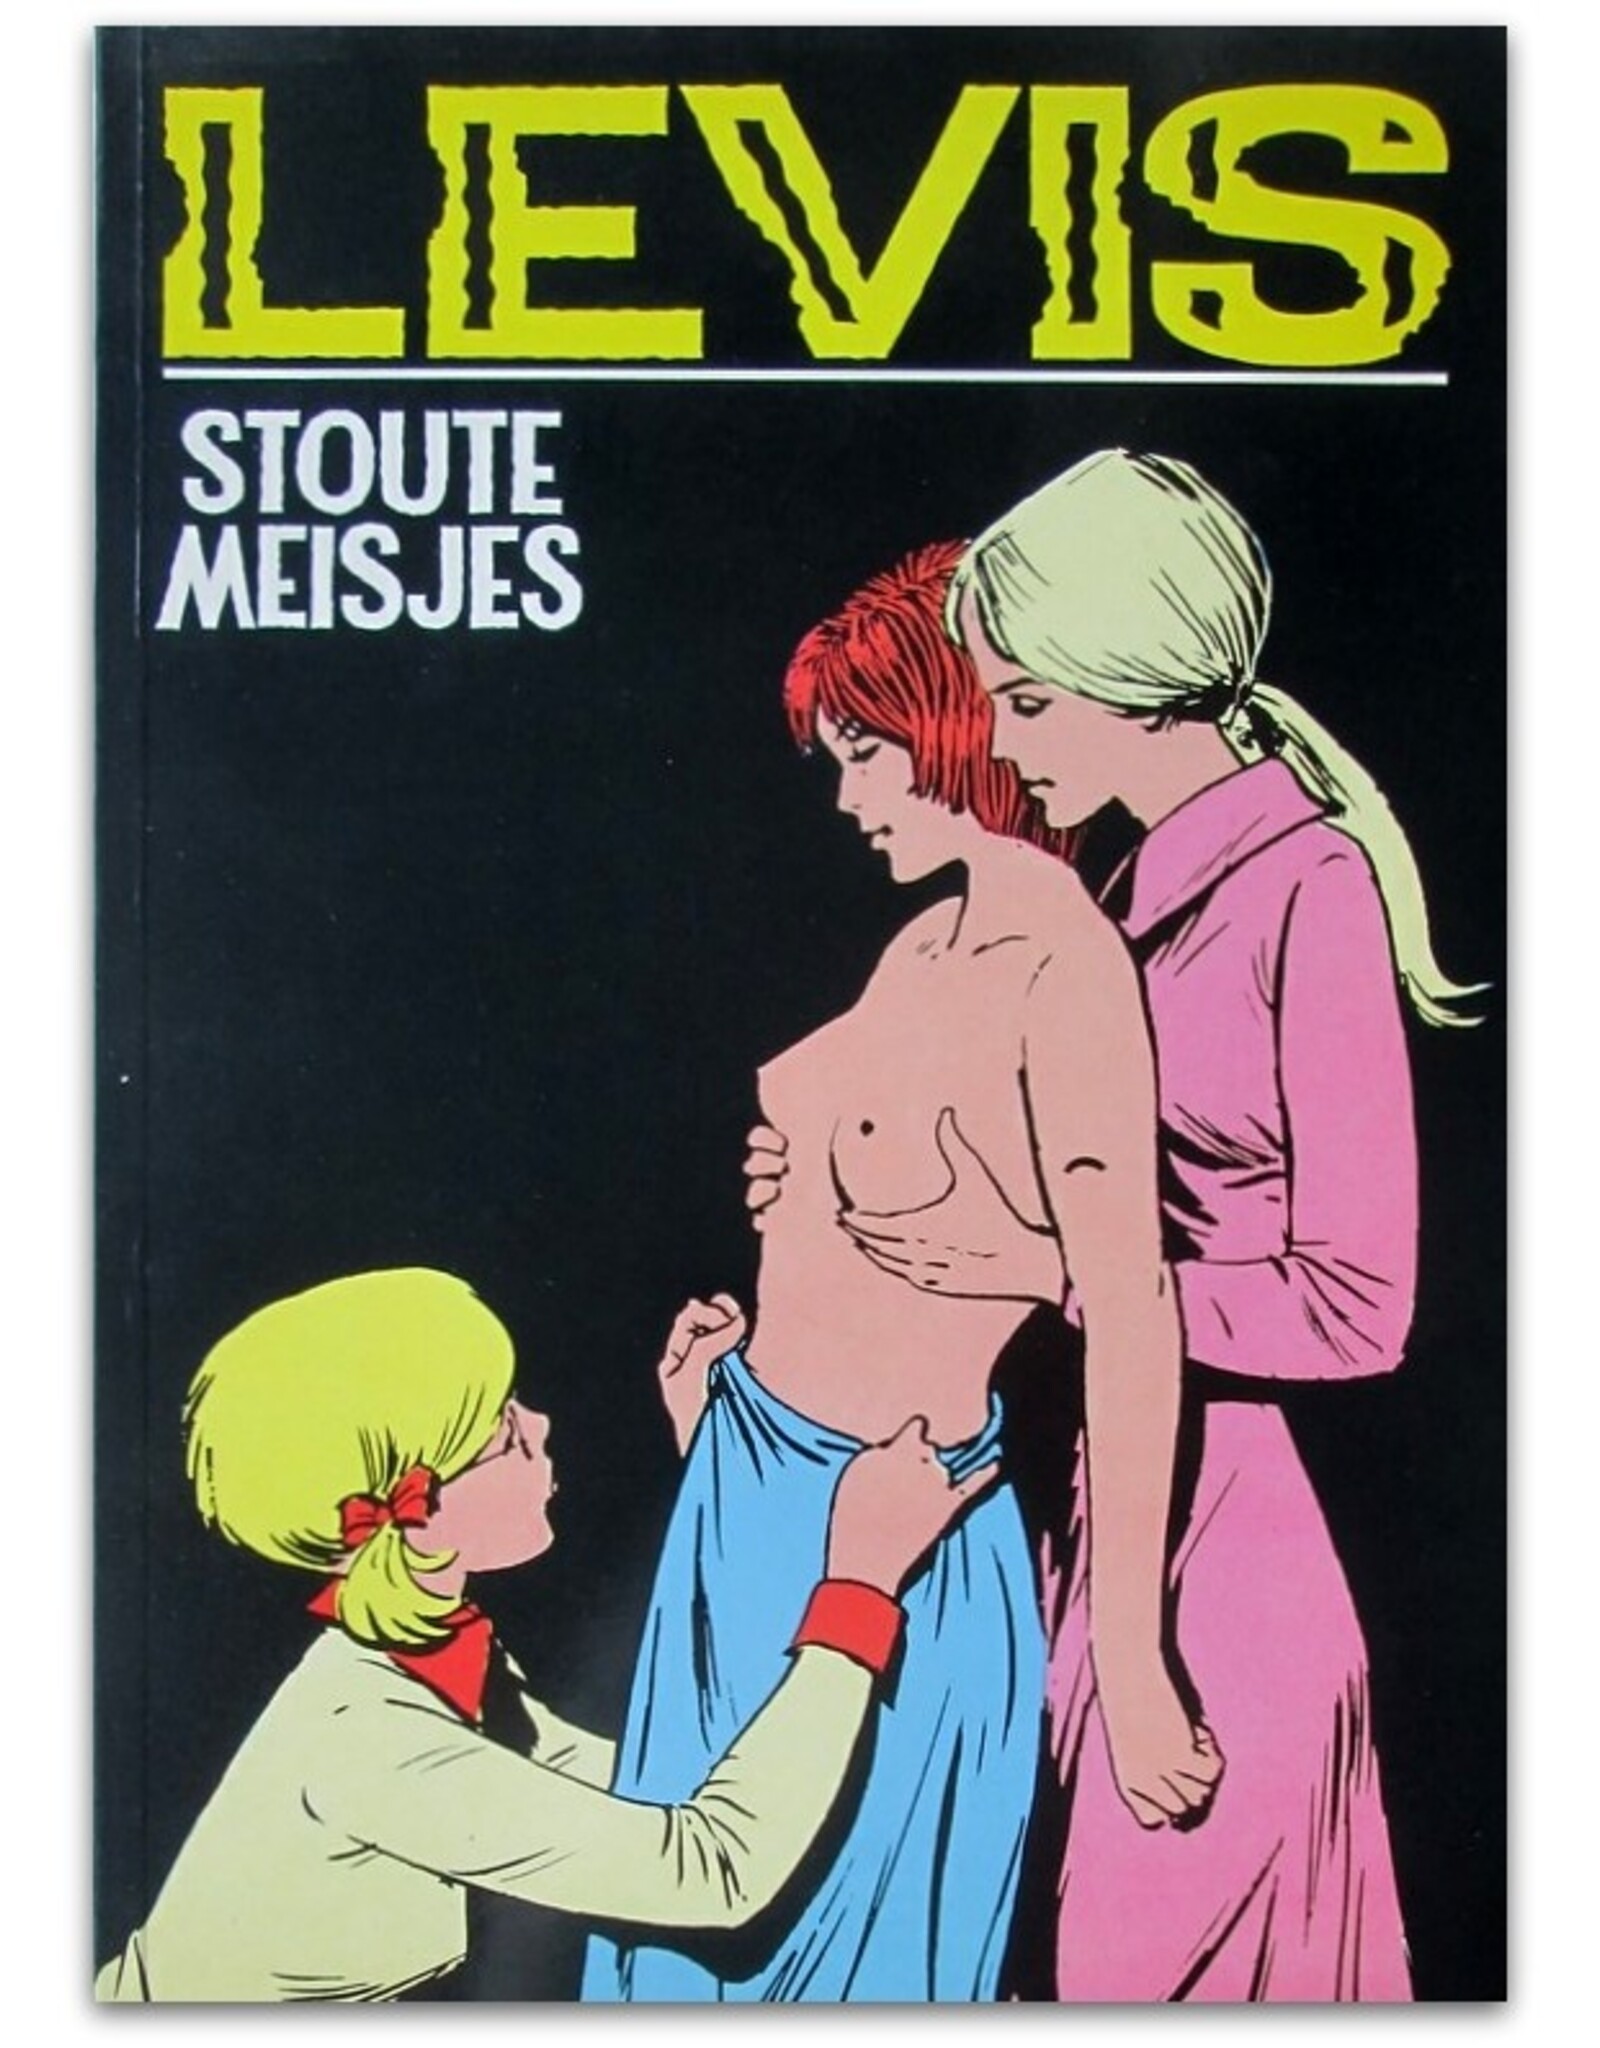 G. Levis - Stoute meisjes